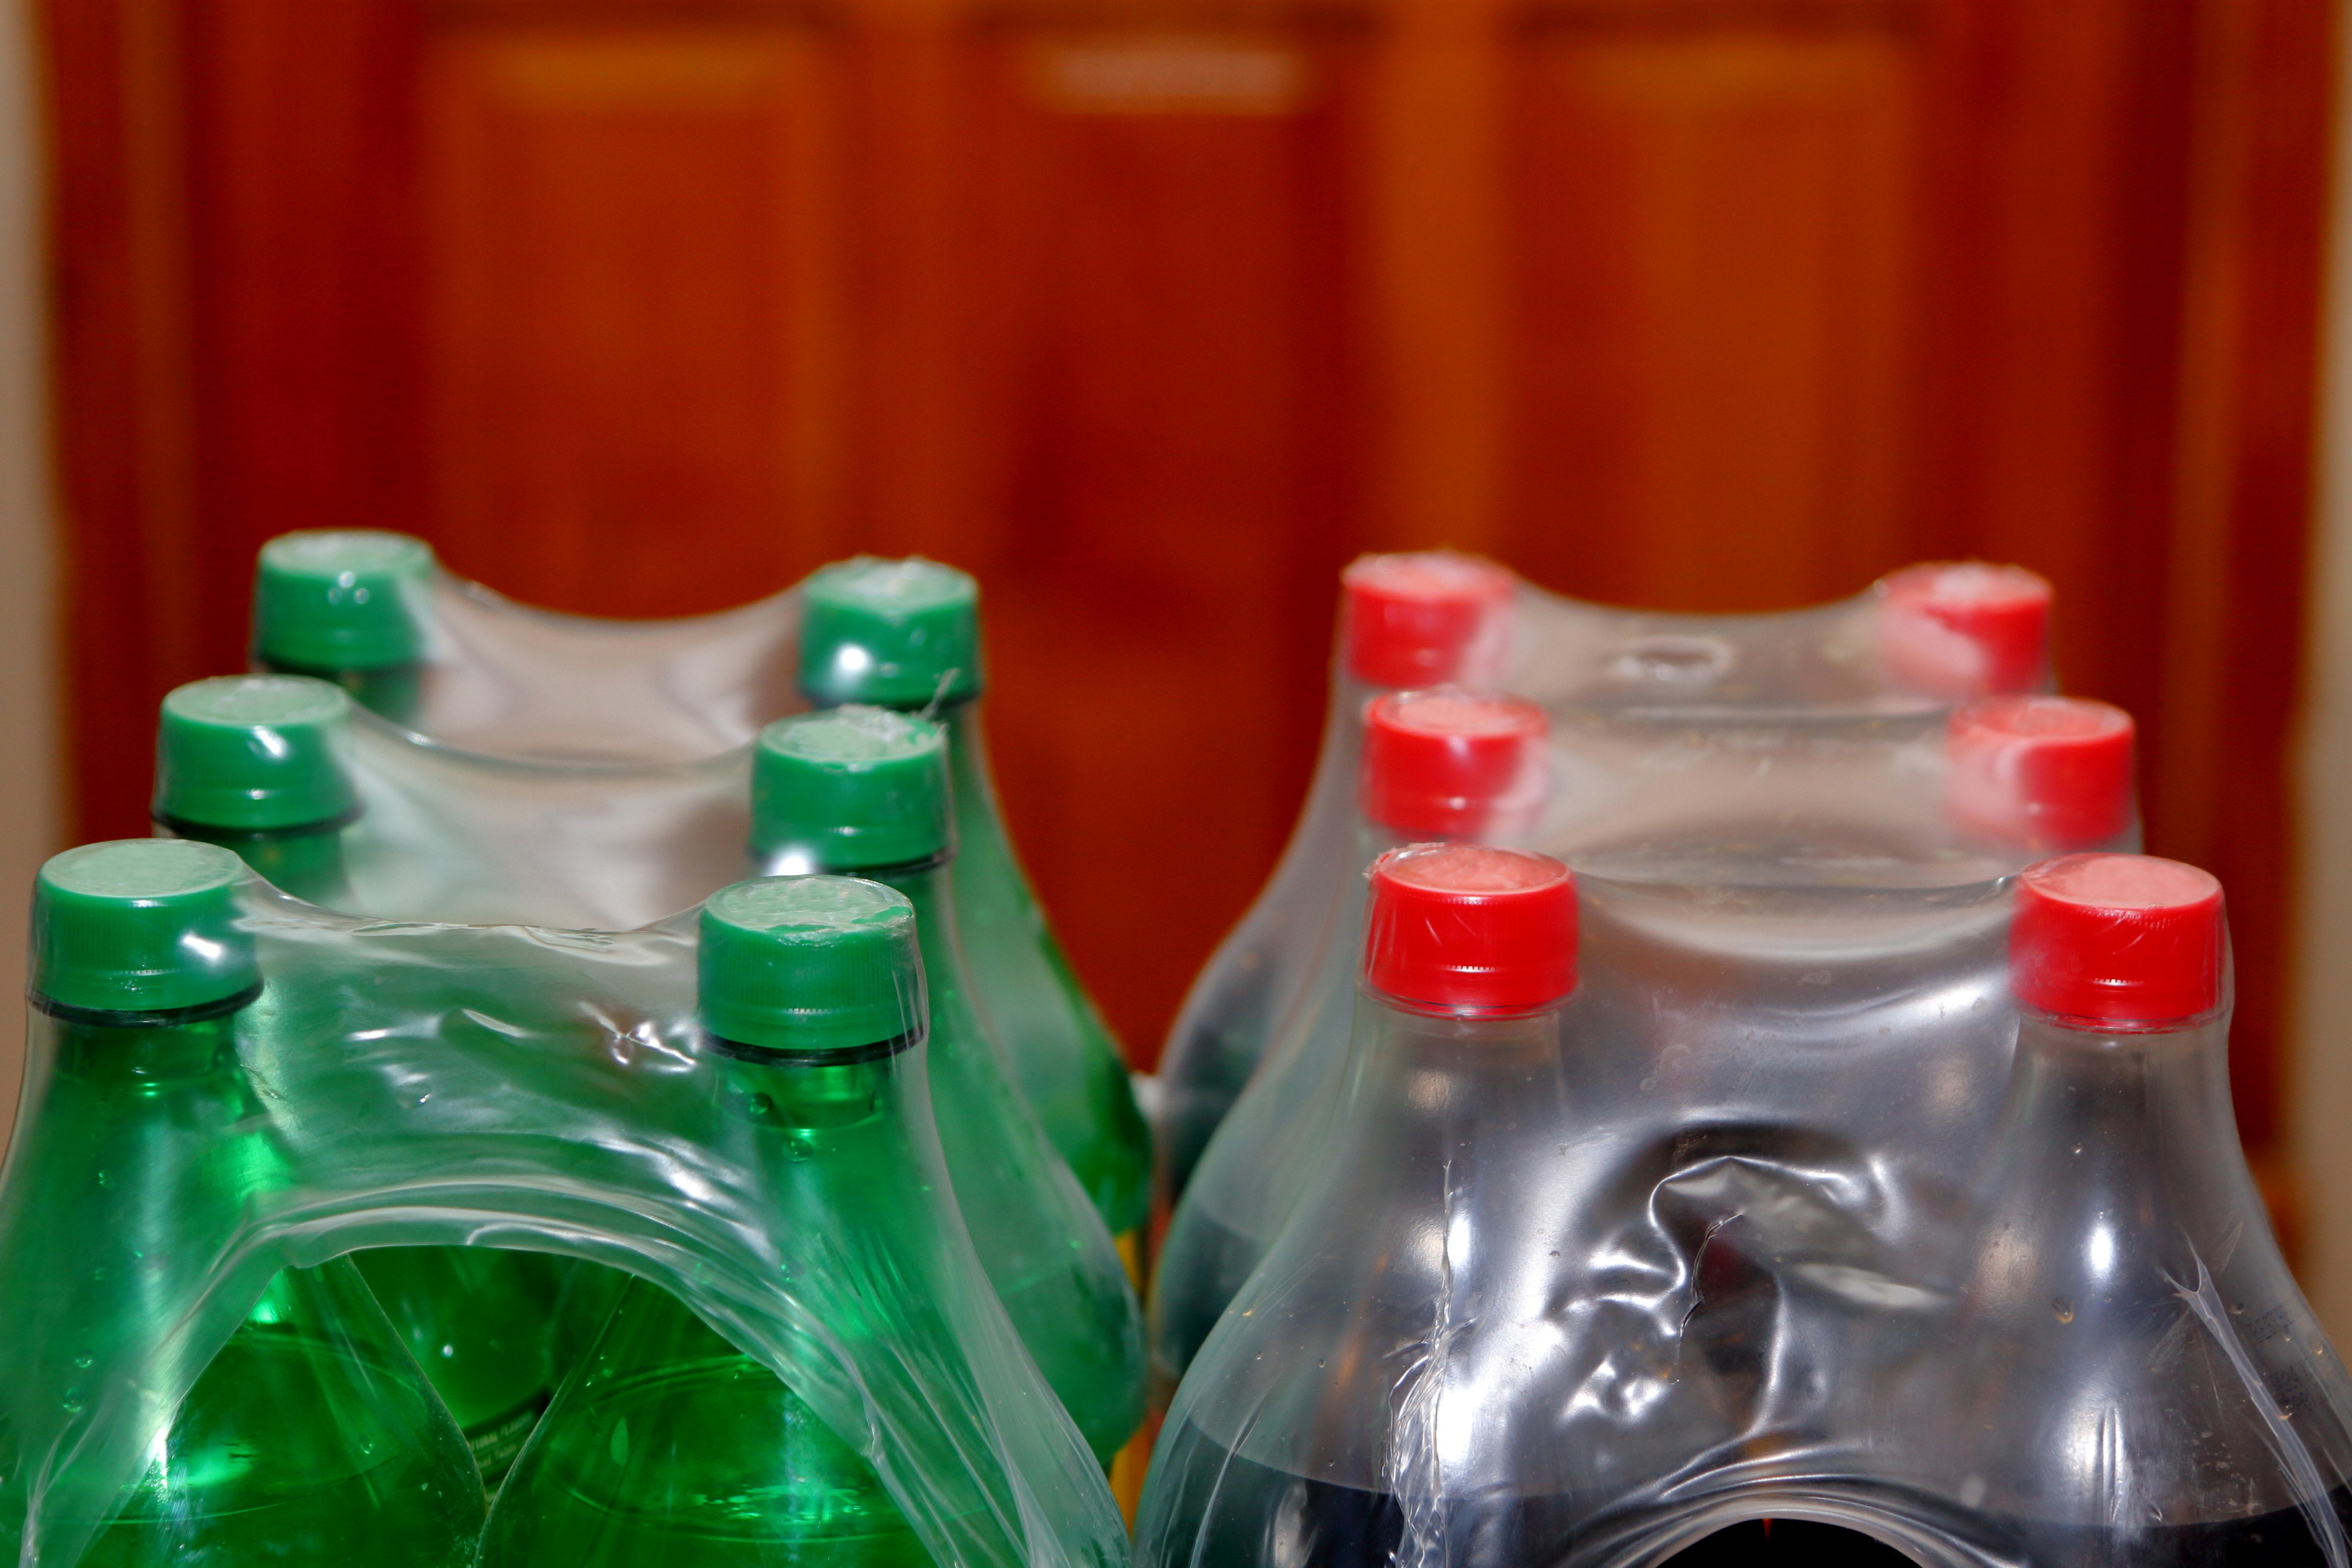 Liter soda bottles